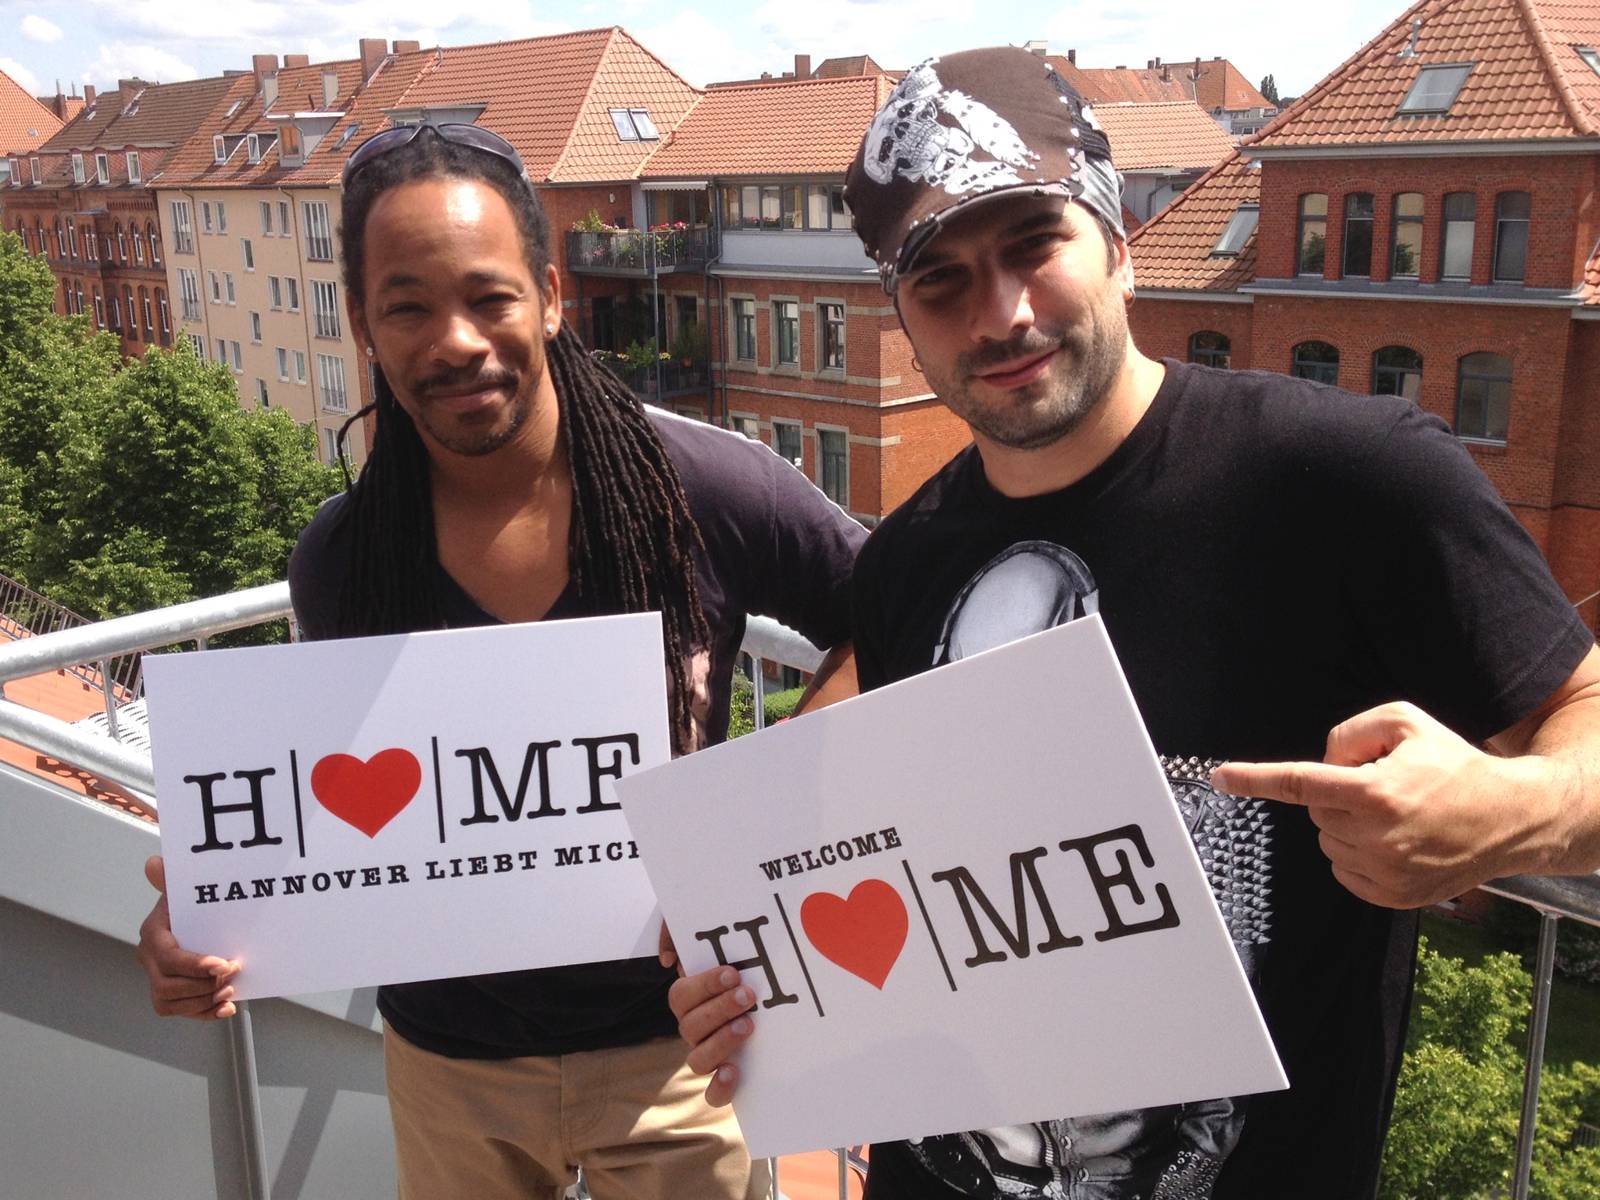 Bereits 2014  hat das kre|H|tiv Netzwerk Hannover e. V. mit "Welcome Home" eine Liebeserklärung an die Stadt produziert – mit dabei u. a. der aktuelle Dschungelkönig Marc Terenzi (rechts) und Darryl Blackmann (links).

